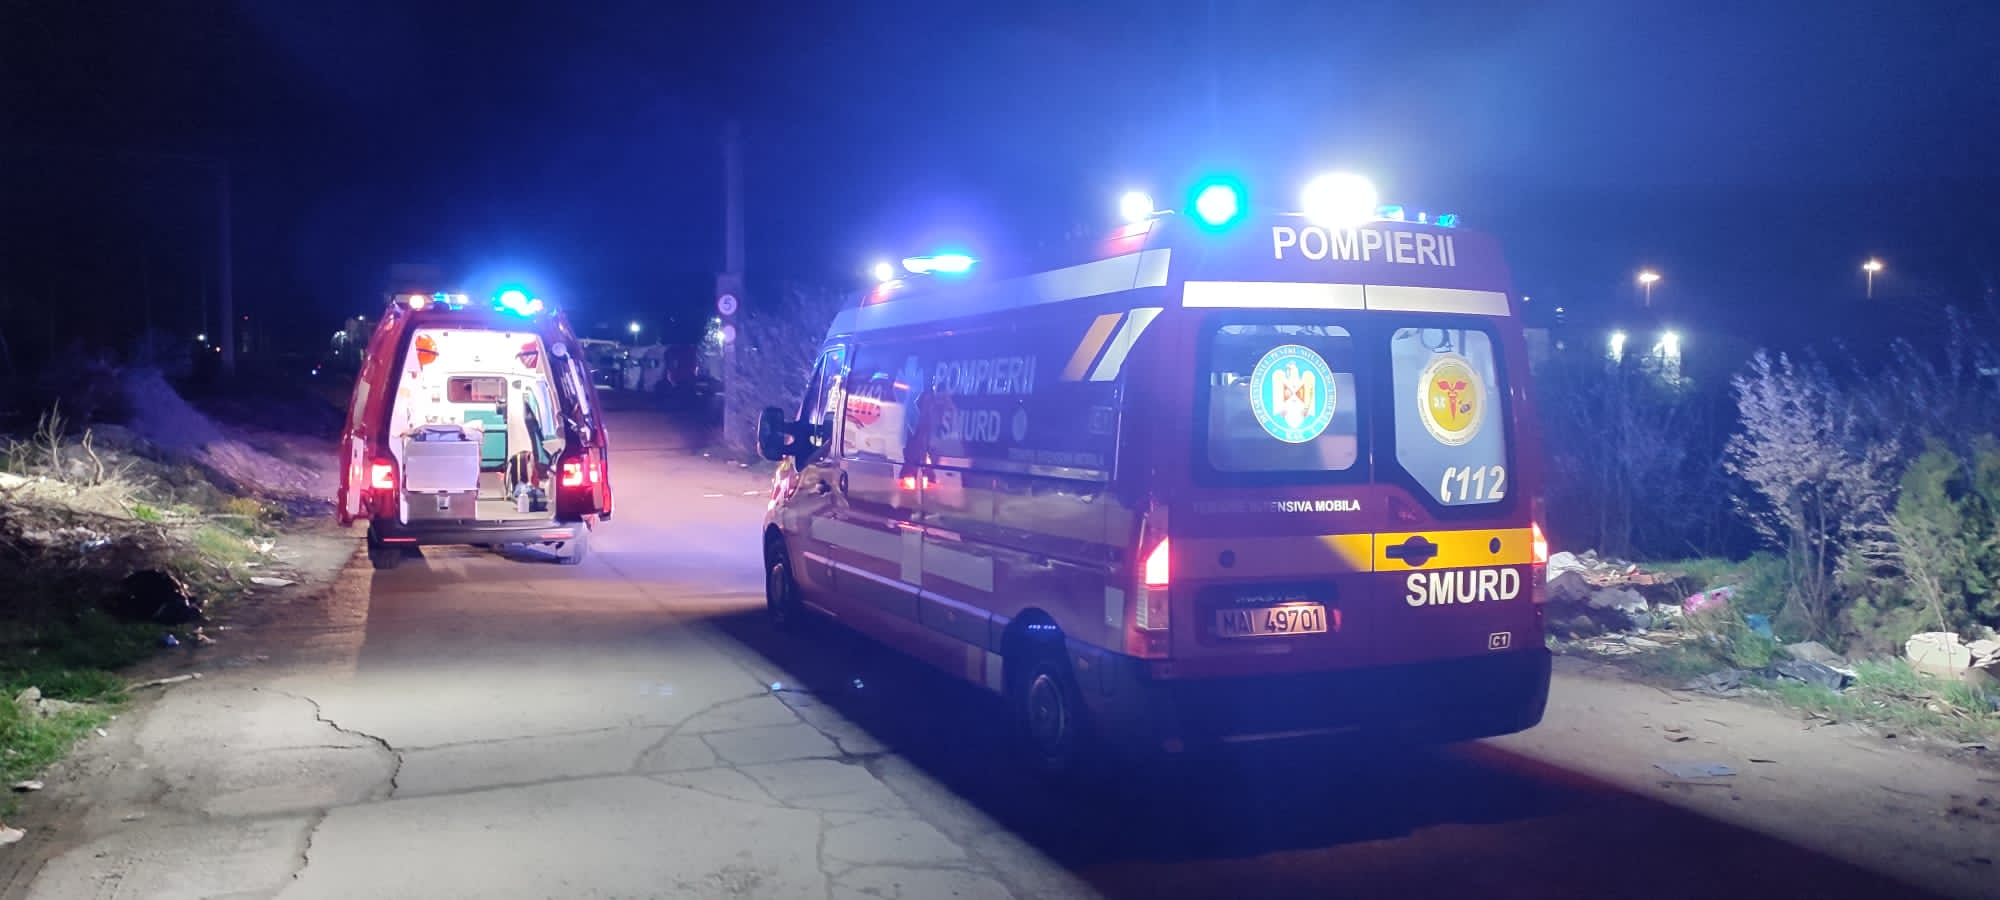 Accident tragic în Cluj-Napoca. Un bărbat a fost lovit mortal de un tren, medicii nu au reușit să-l salveze